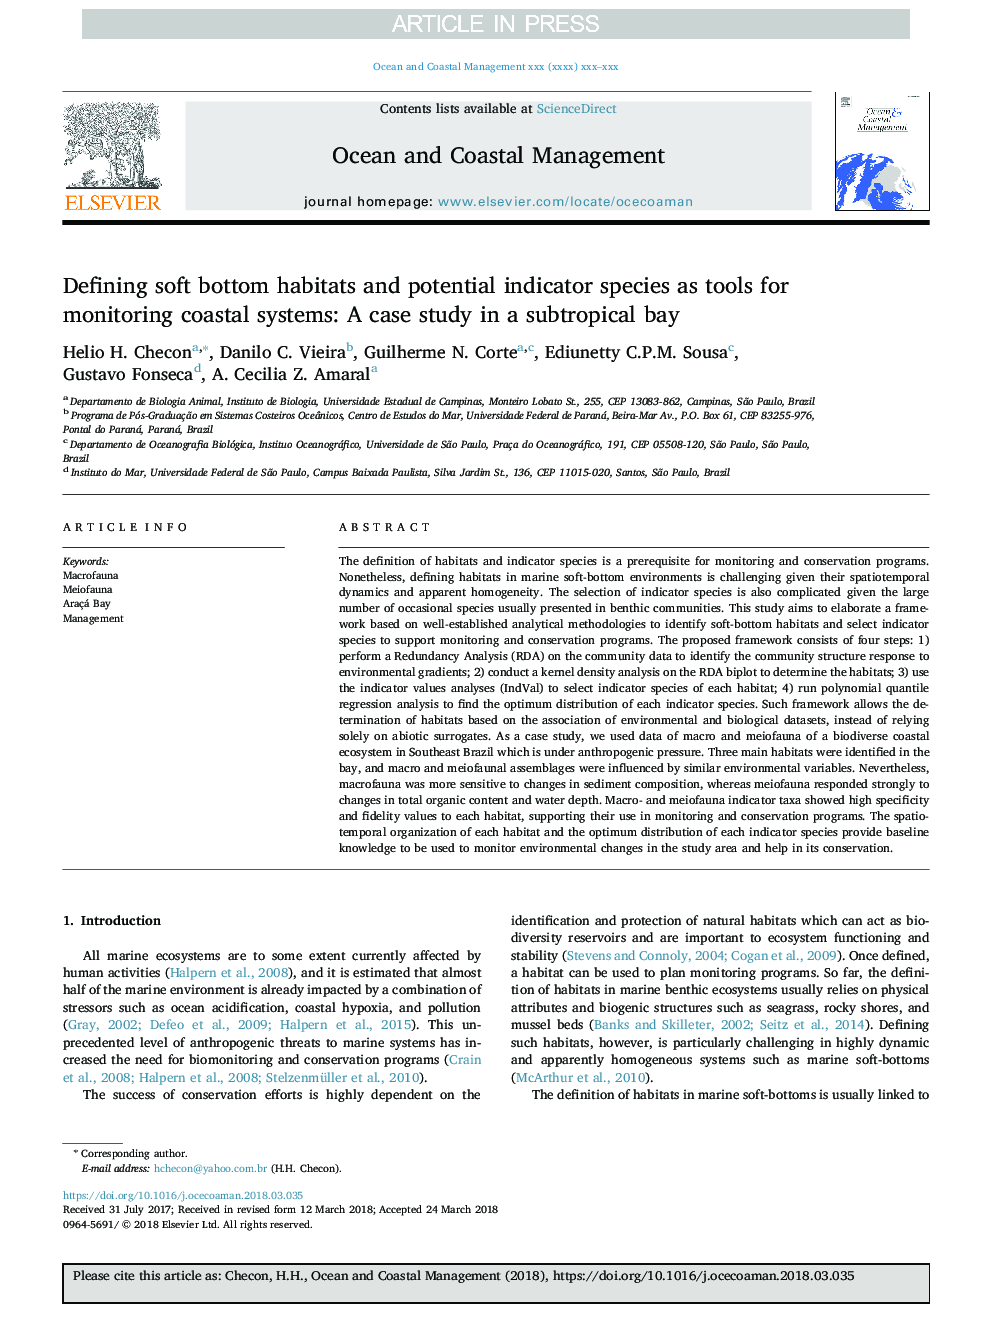 تعریف زیستگاه های پایینی نرم و گونه های شاخص بالقوه به عنوان ابزار برای نظارت بر سیستم های ساحلی: یک مطالعه موردی در خلیج ساتروپیک